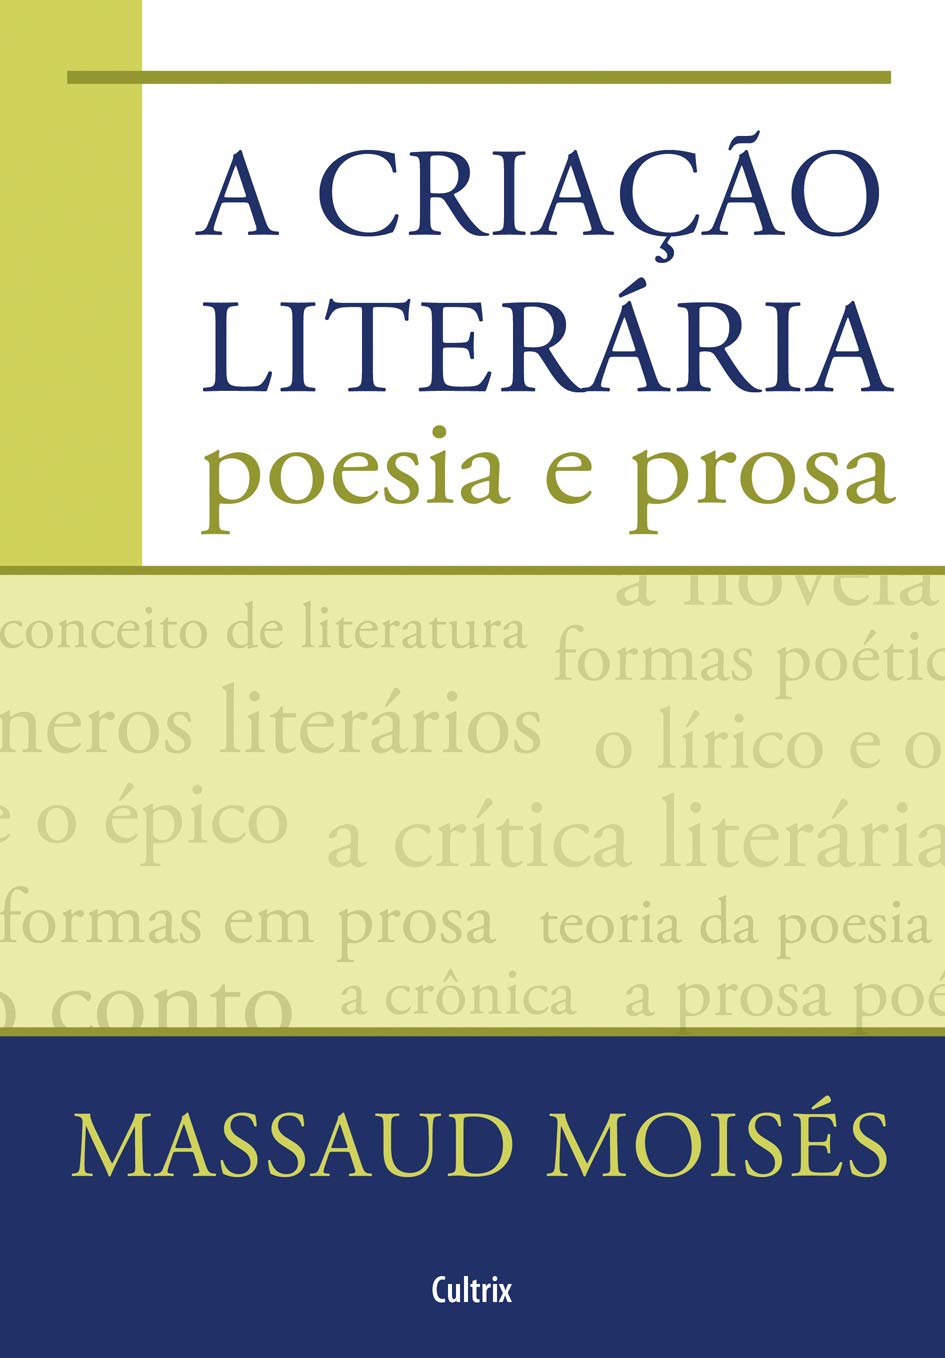 A criação literária - Poesia e prosa - Massaud Moisés 